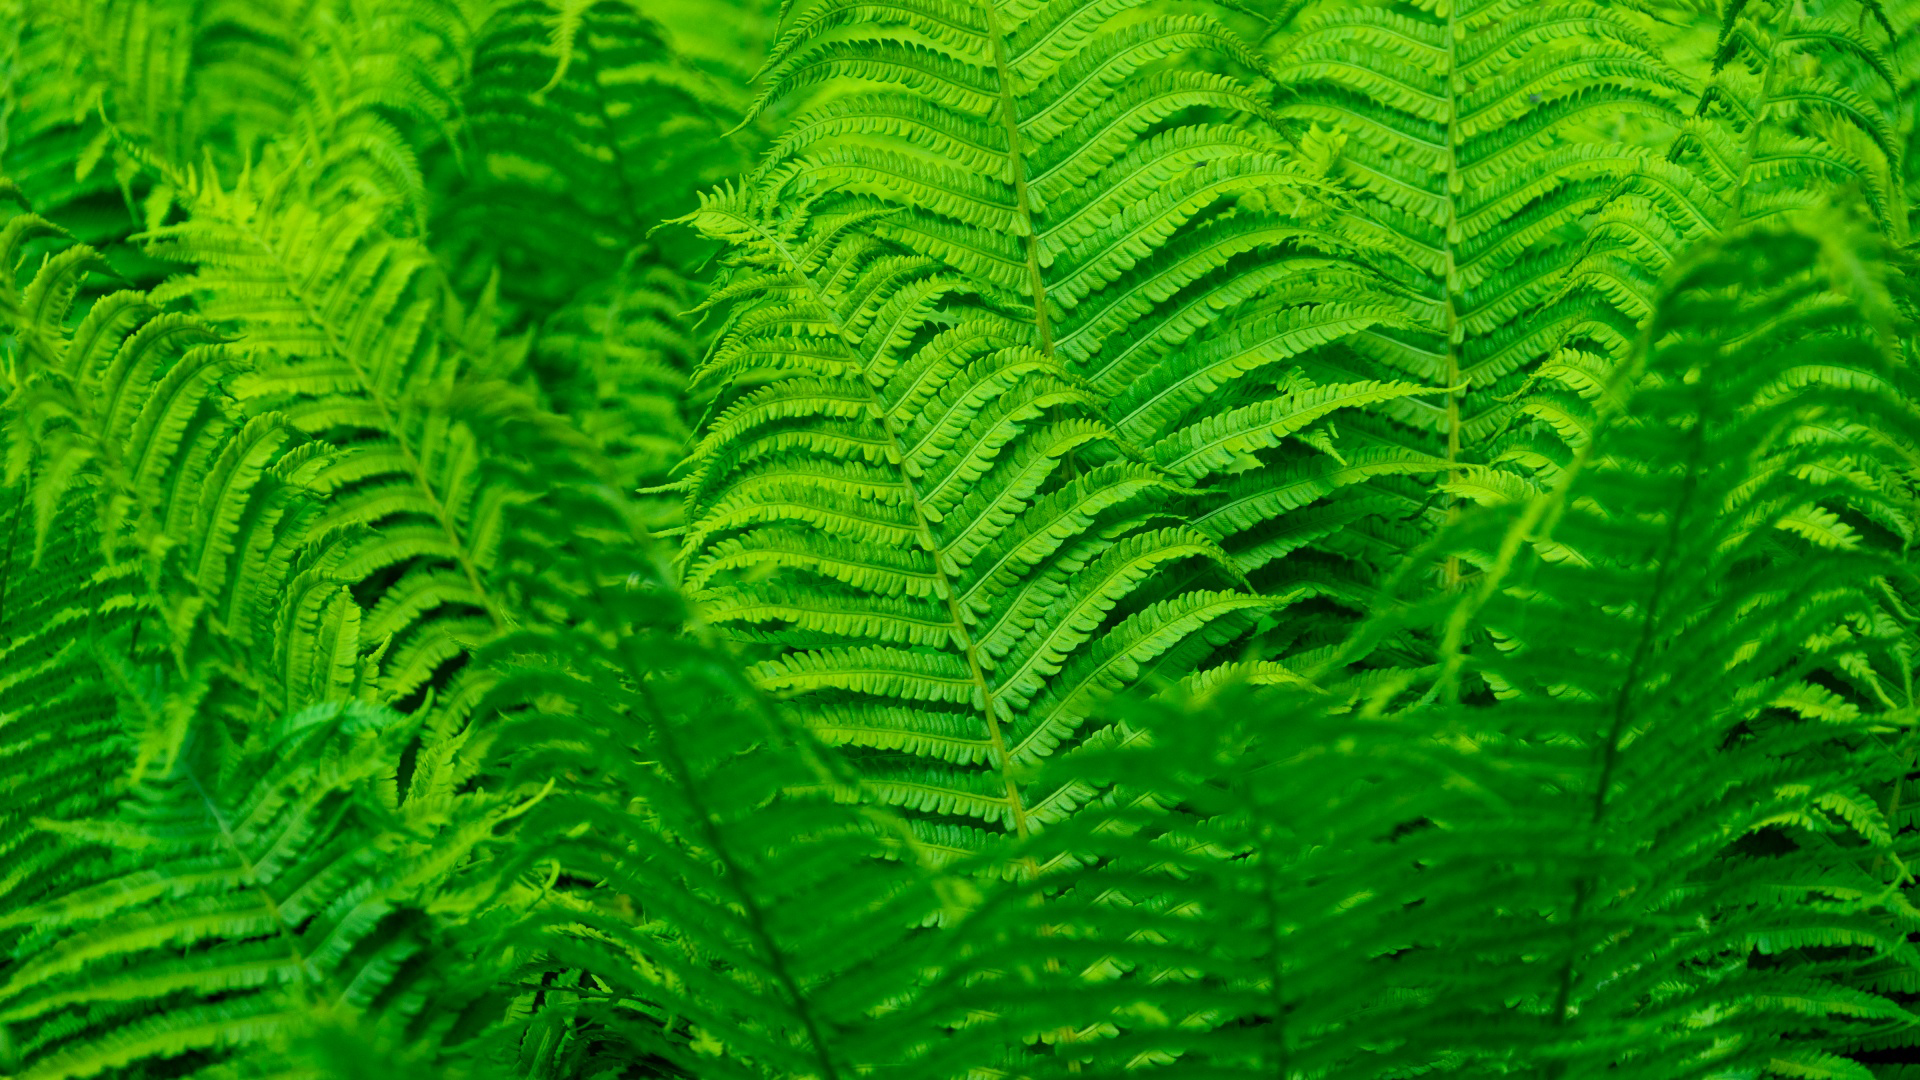 Fern Greenery Leaves HD Nature